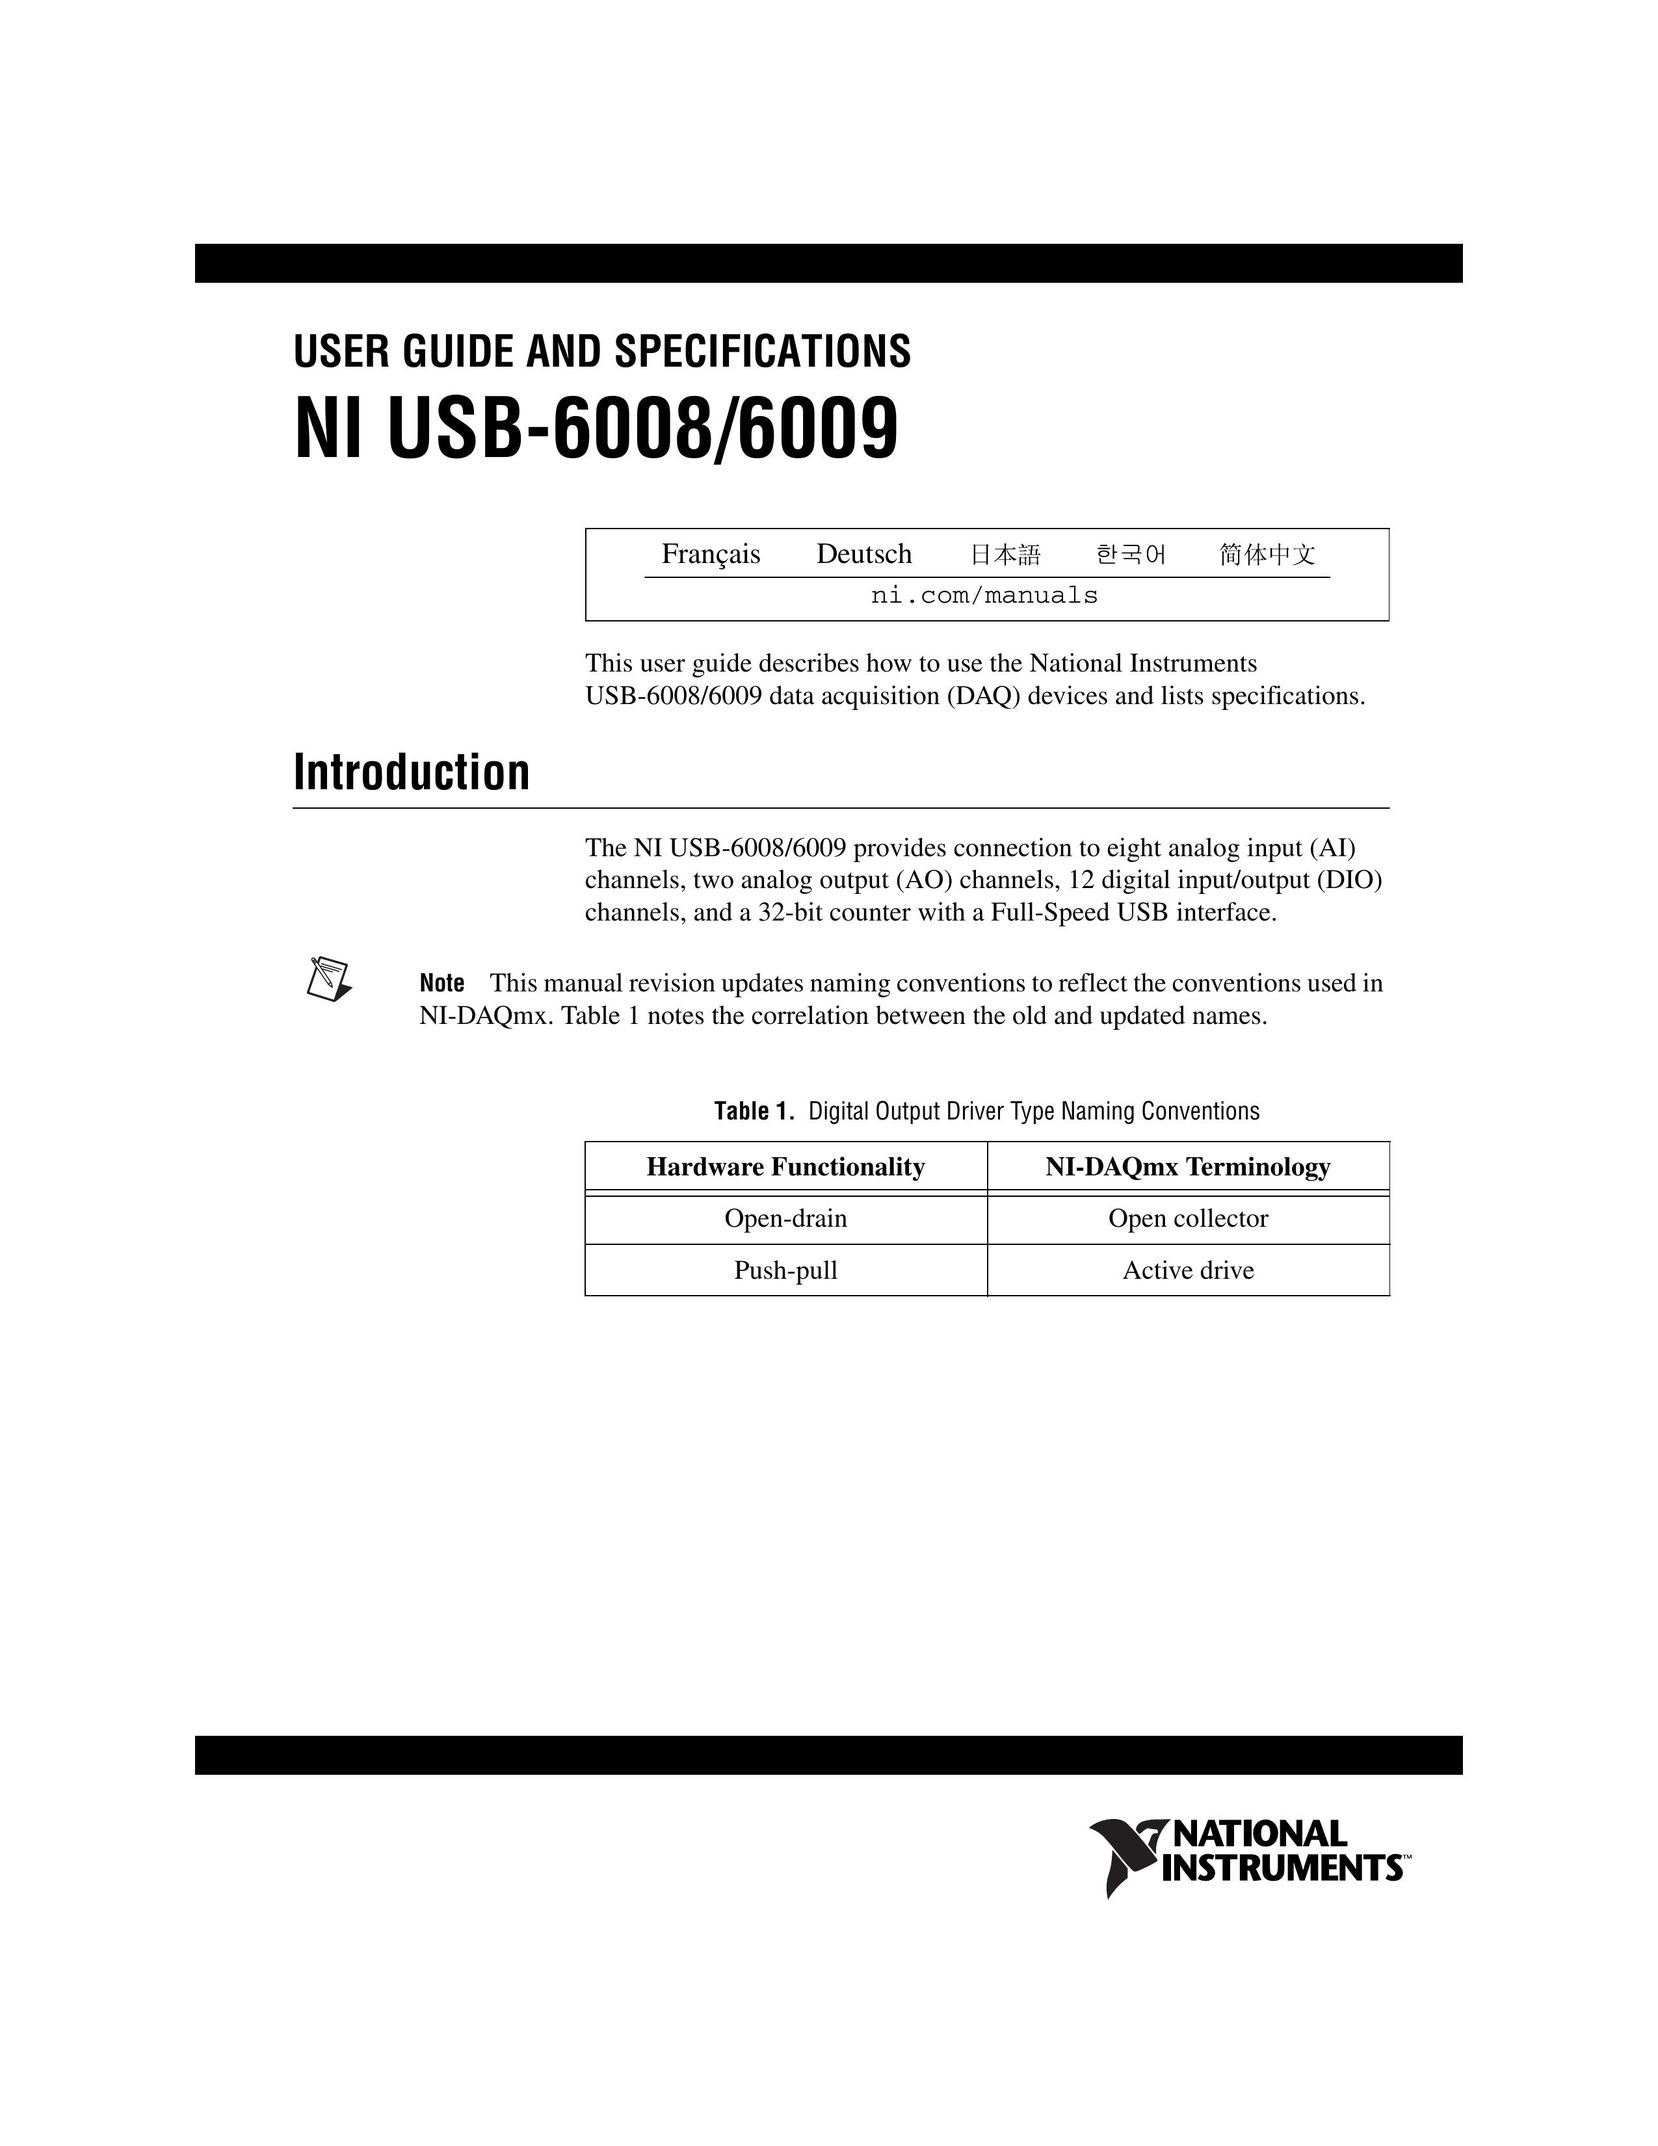 National Instruments NI USB-6008/6009 Computer Drive User Manual